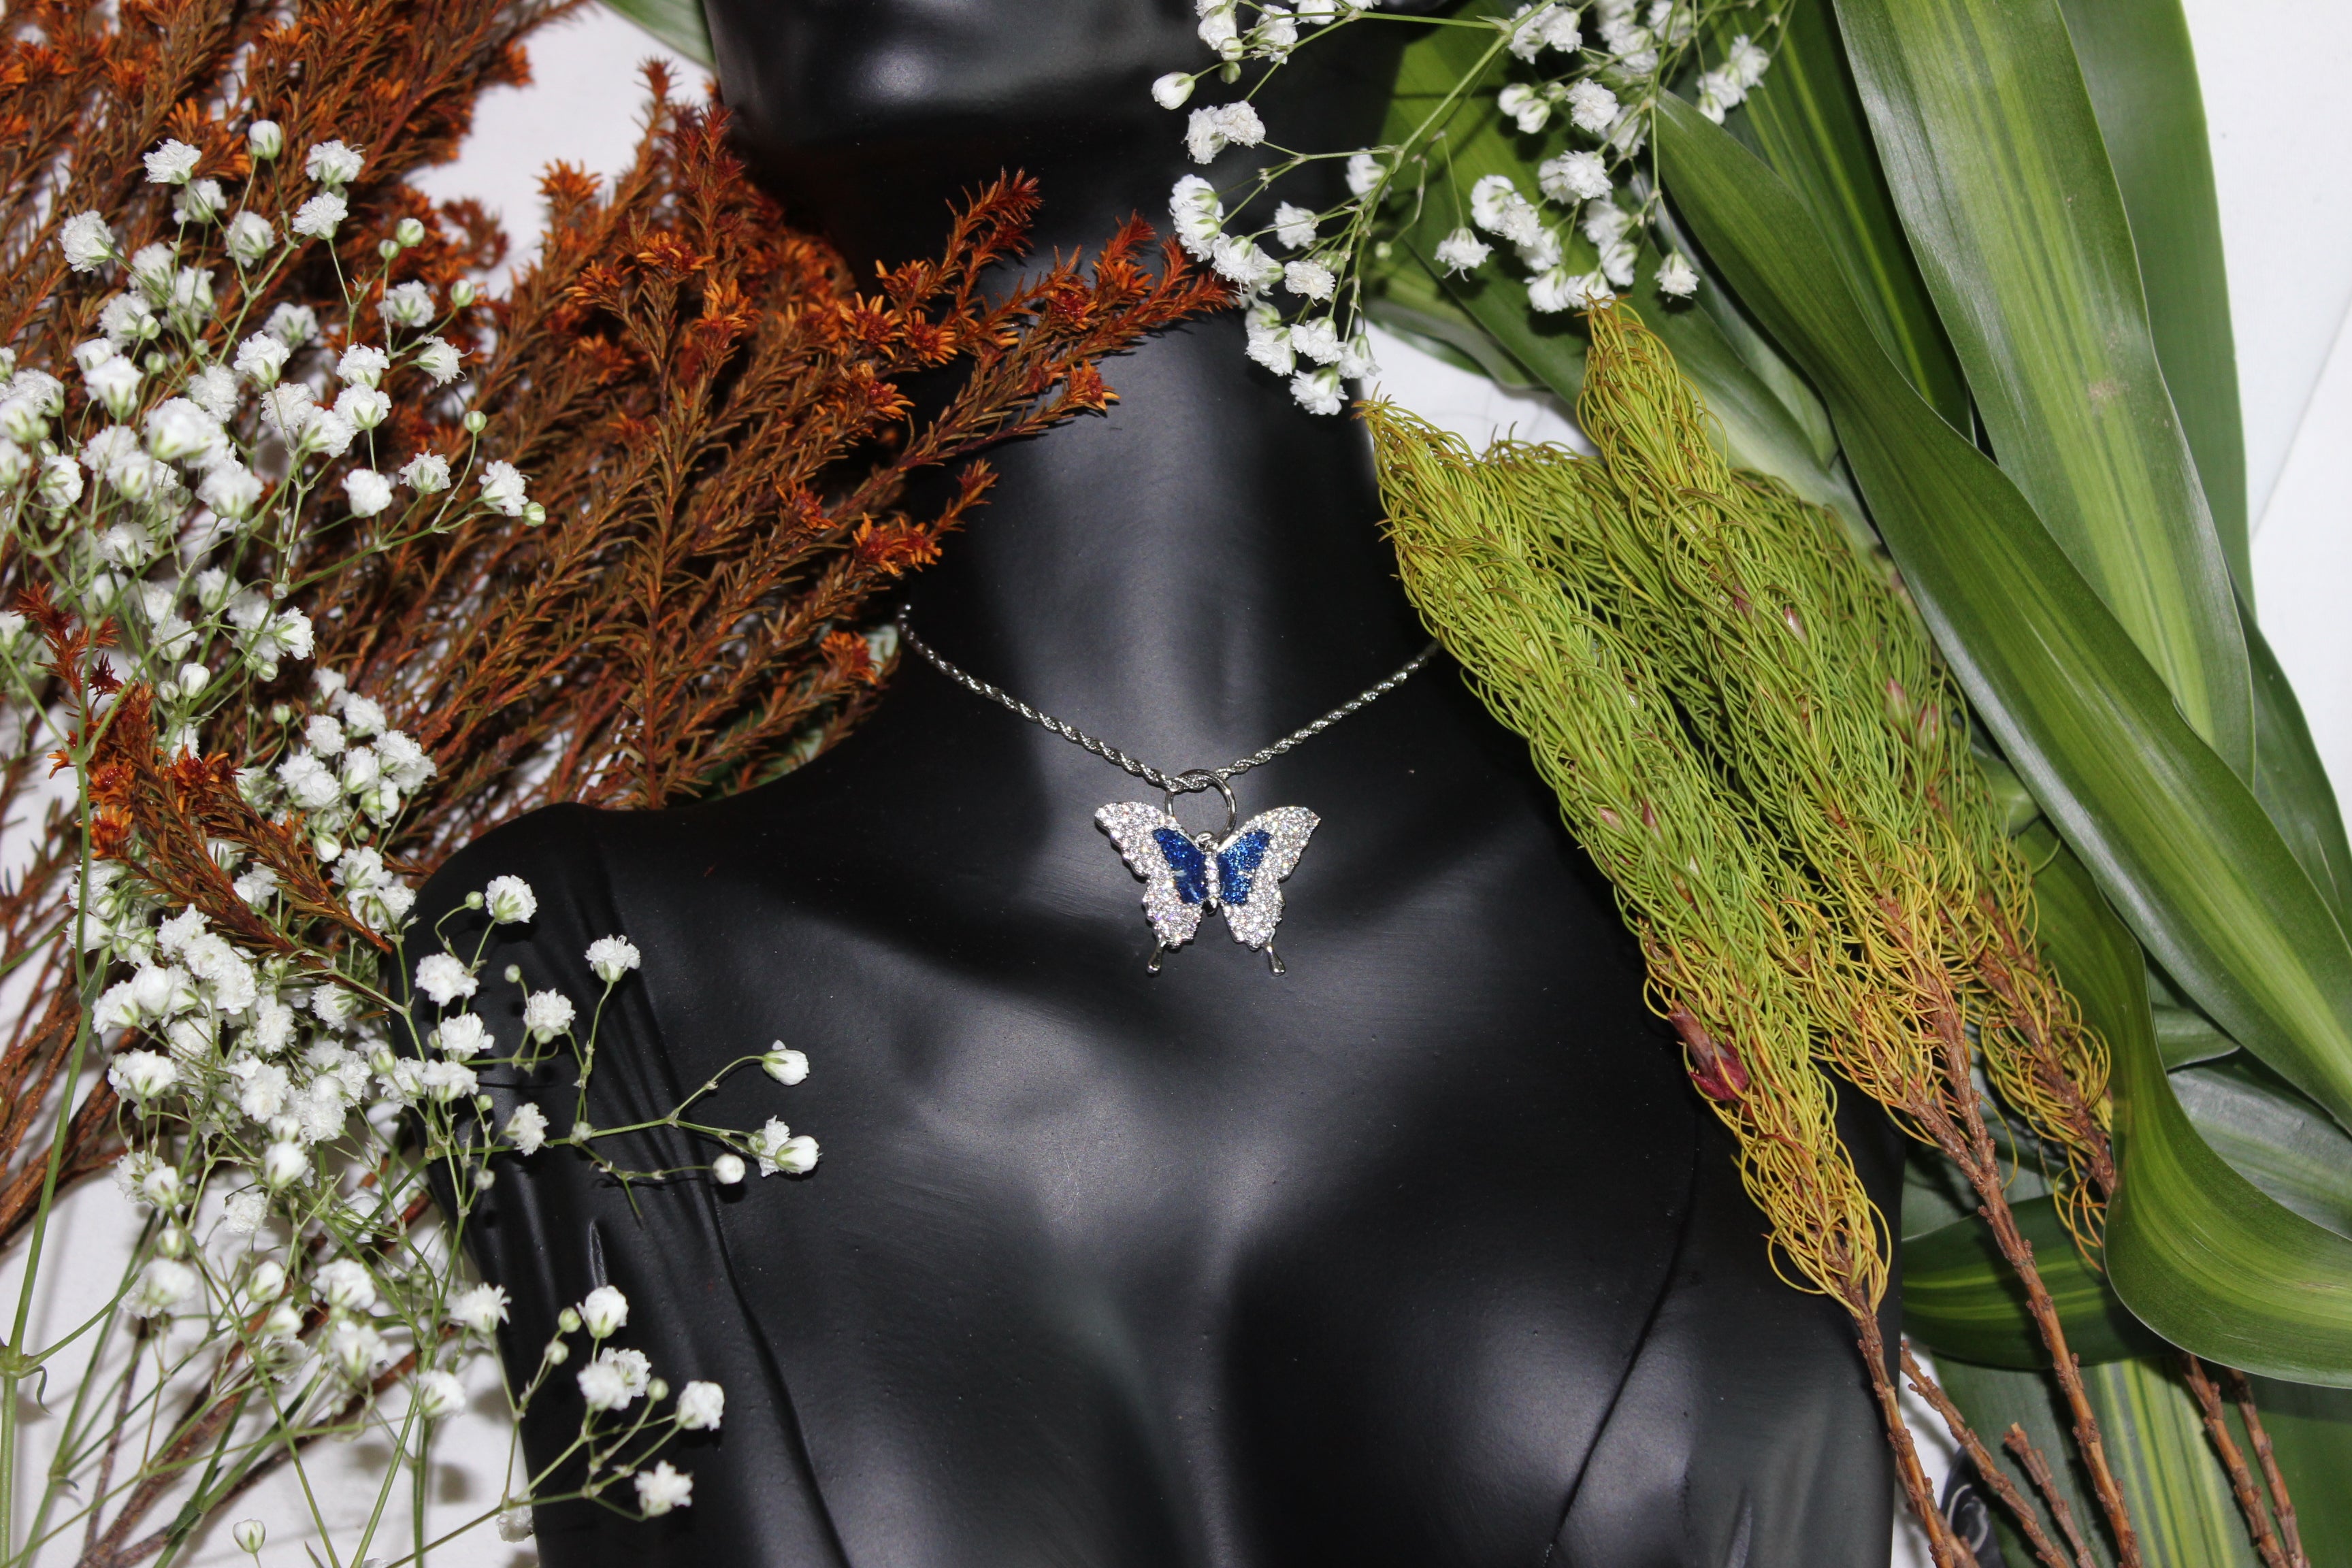 Blue Swallowtail Butterfly